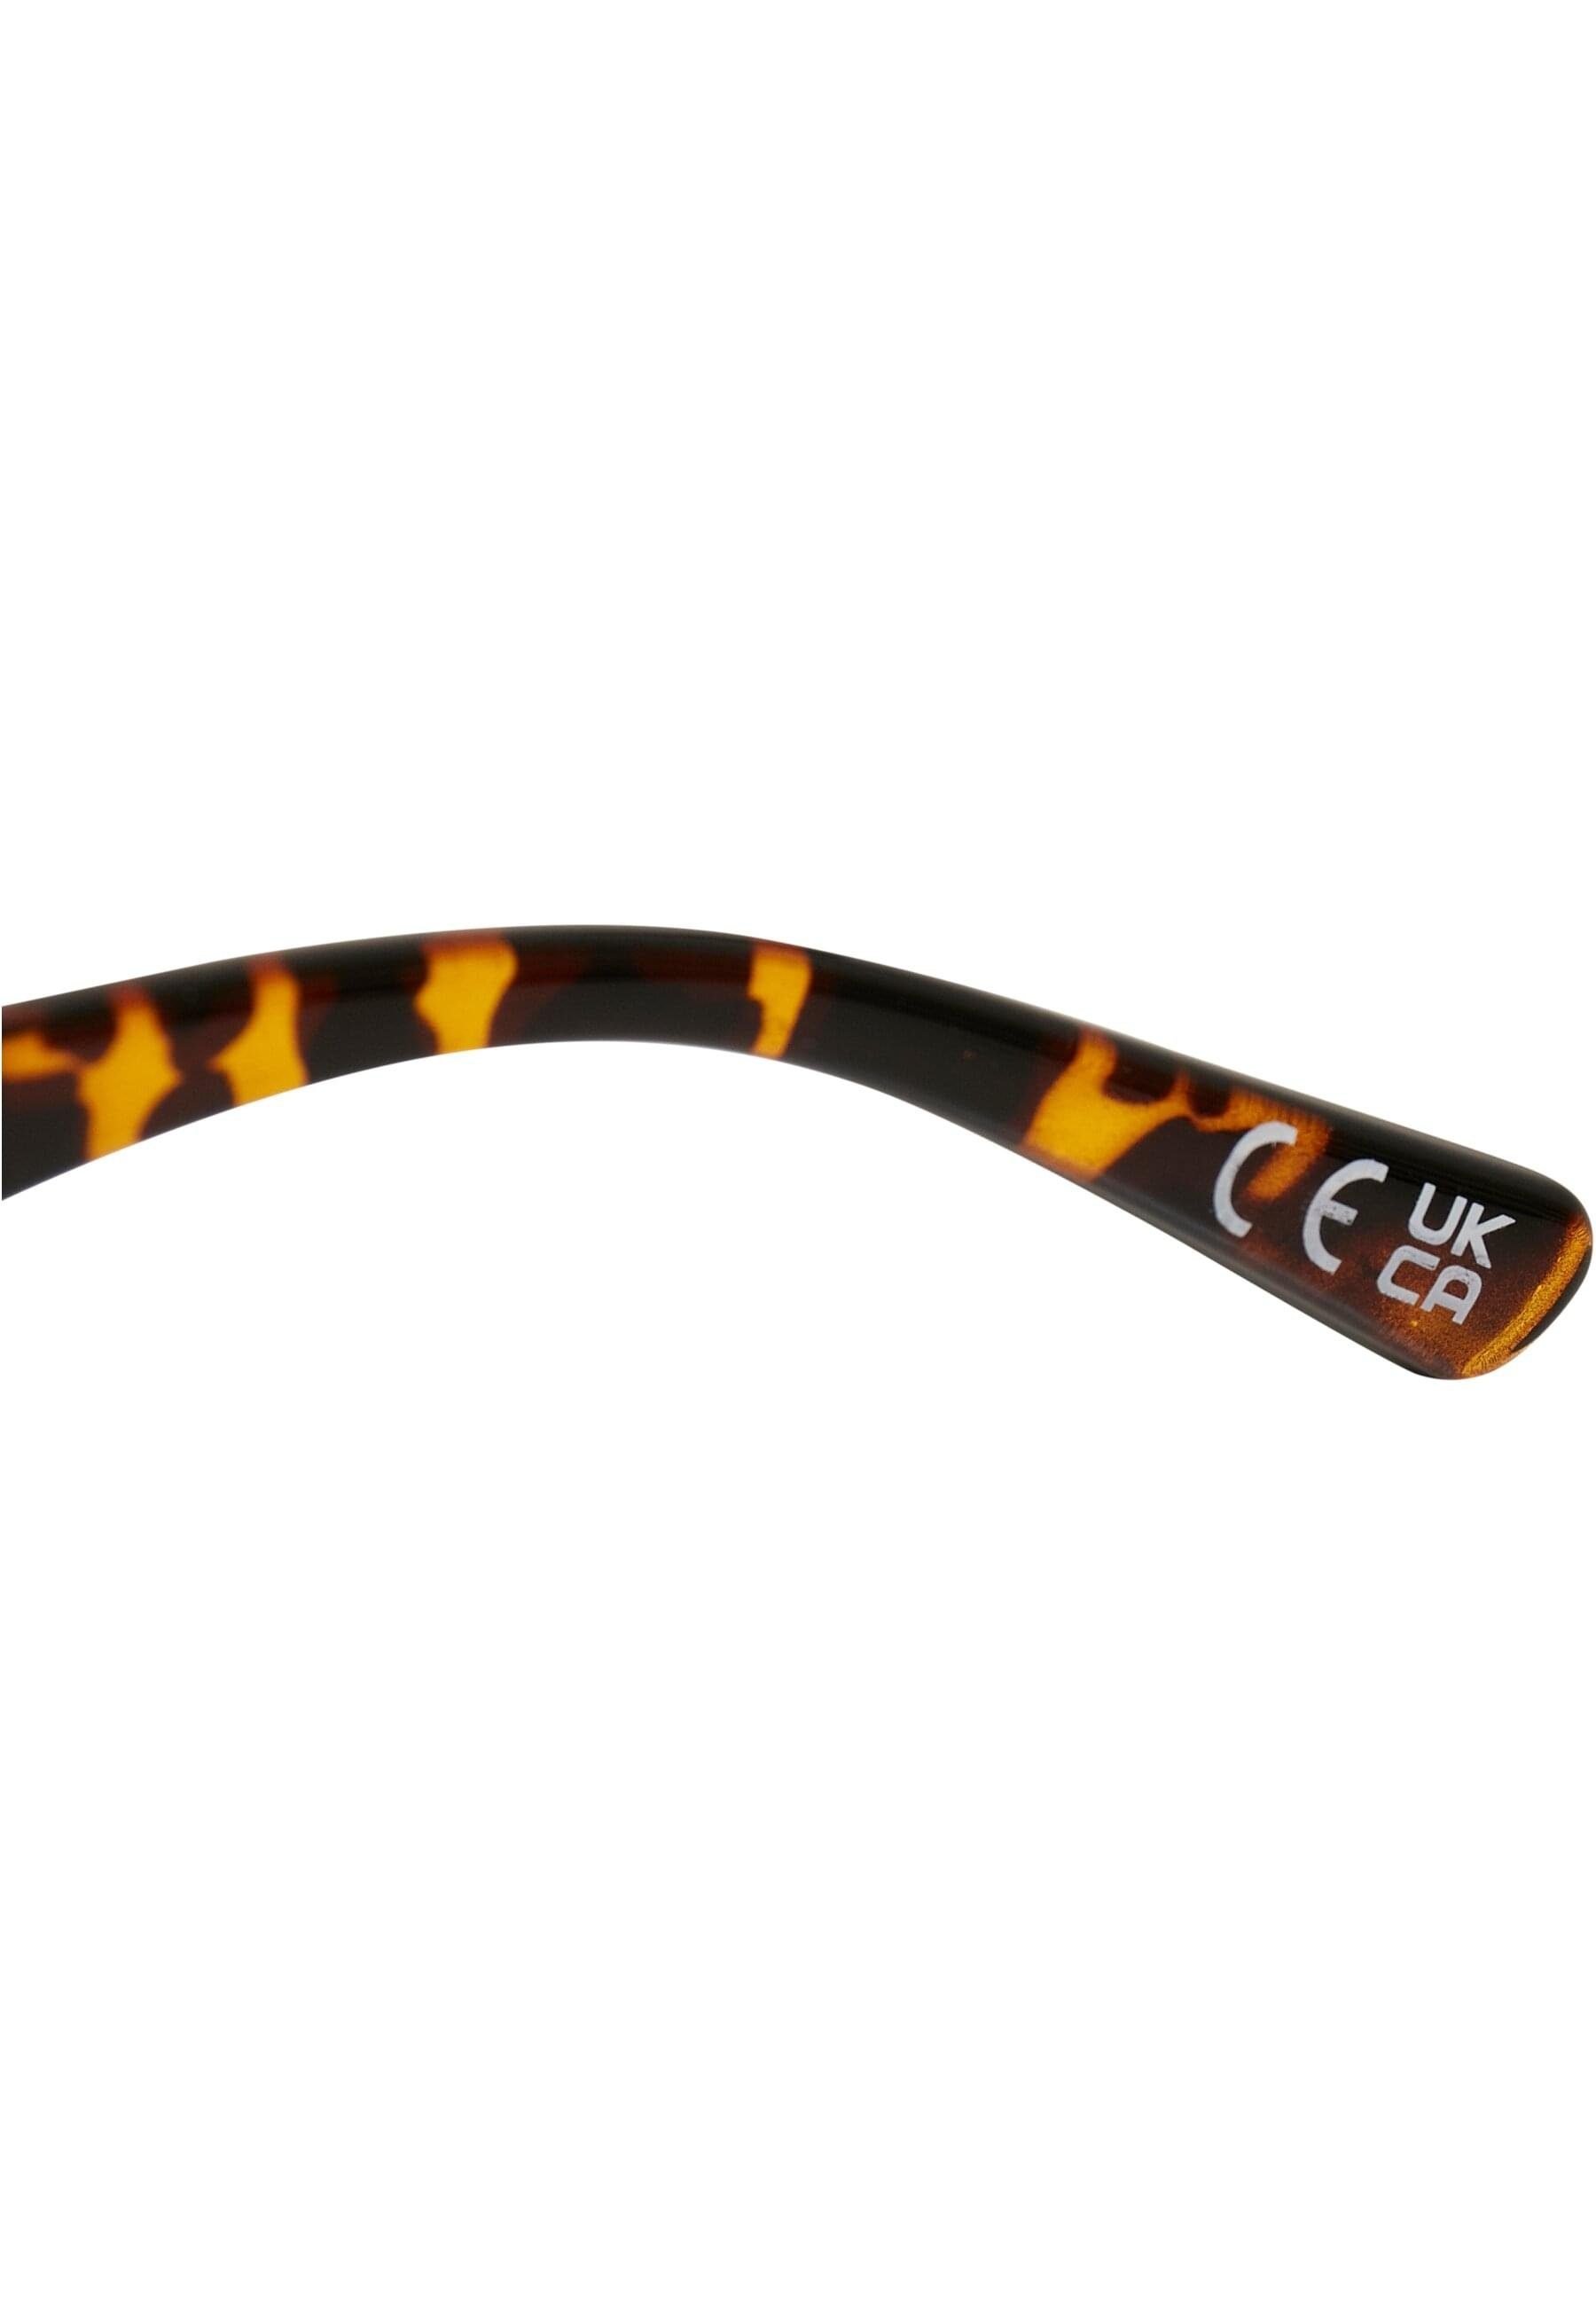 URBAN amber Sunglasses Unisex Sonnenbrille Santa Cruz CLASSICS